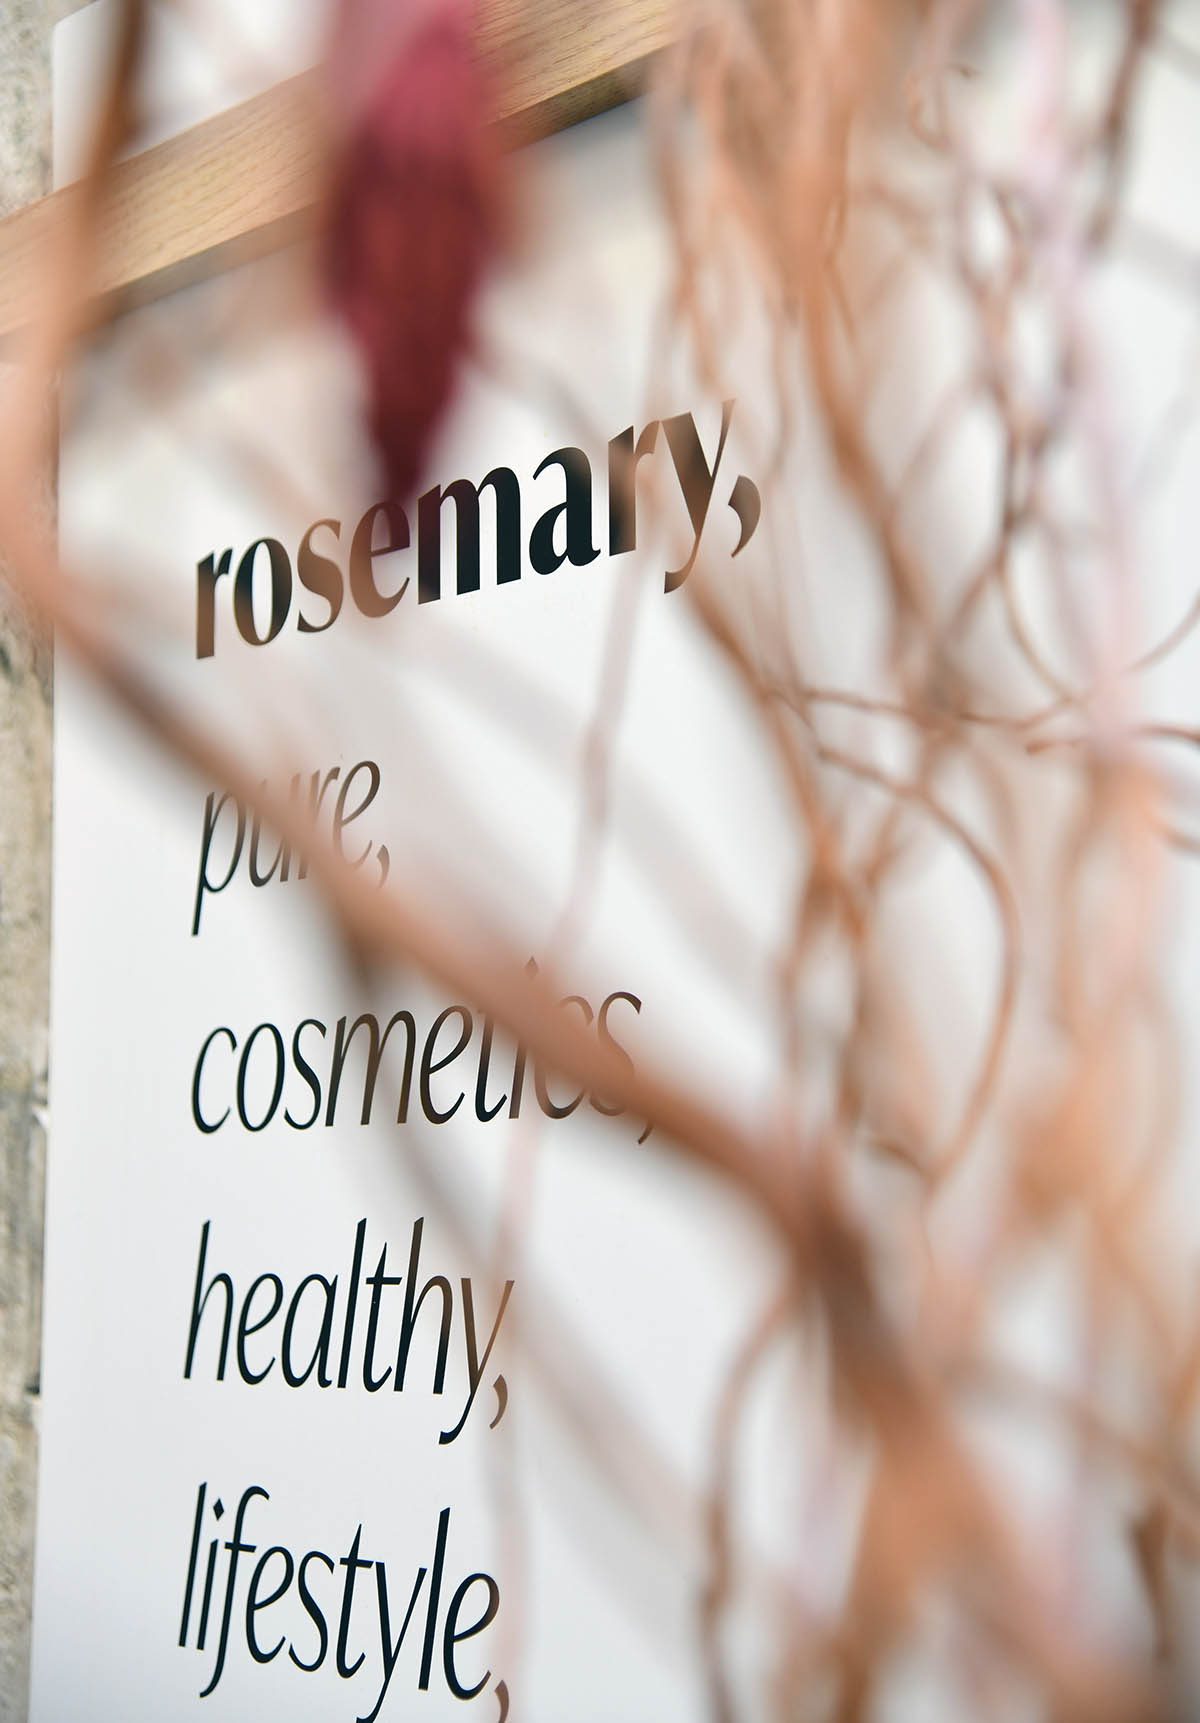 Rosemary - vrhunska prirodna kozmetika napokon u Rijeci!